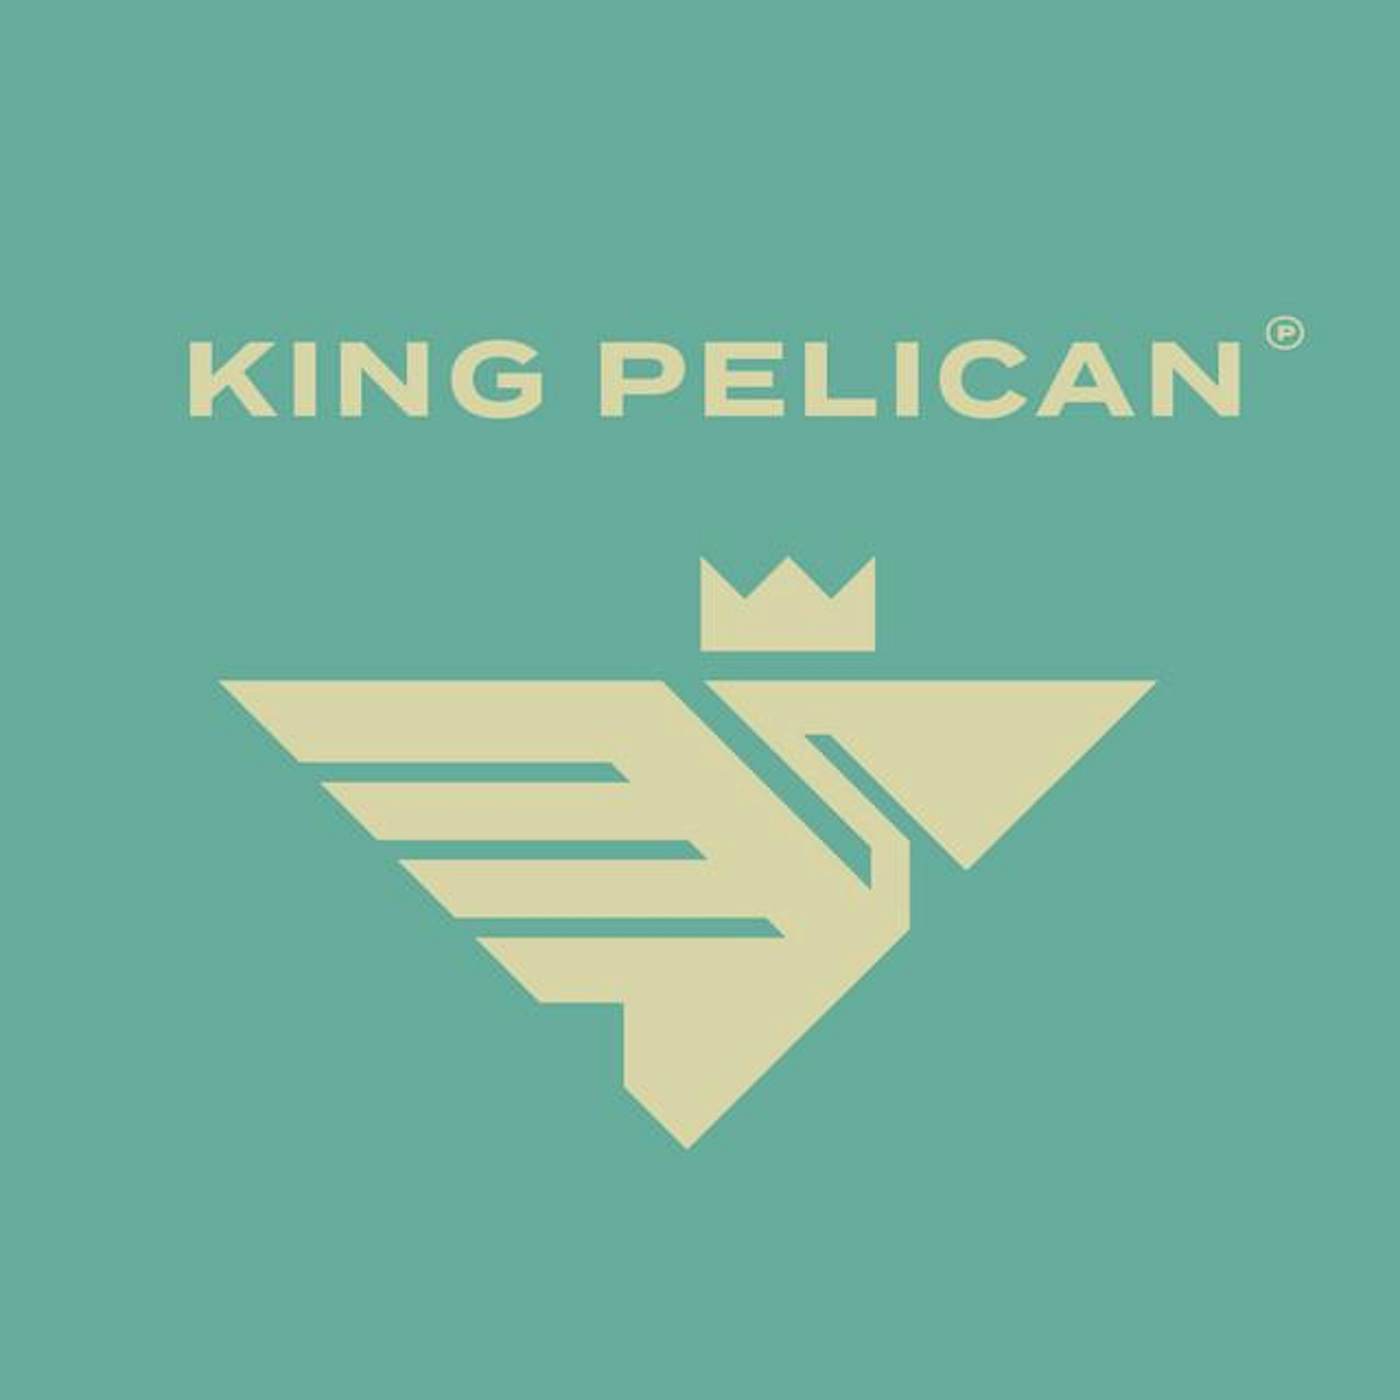 King Pelican